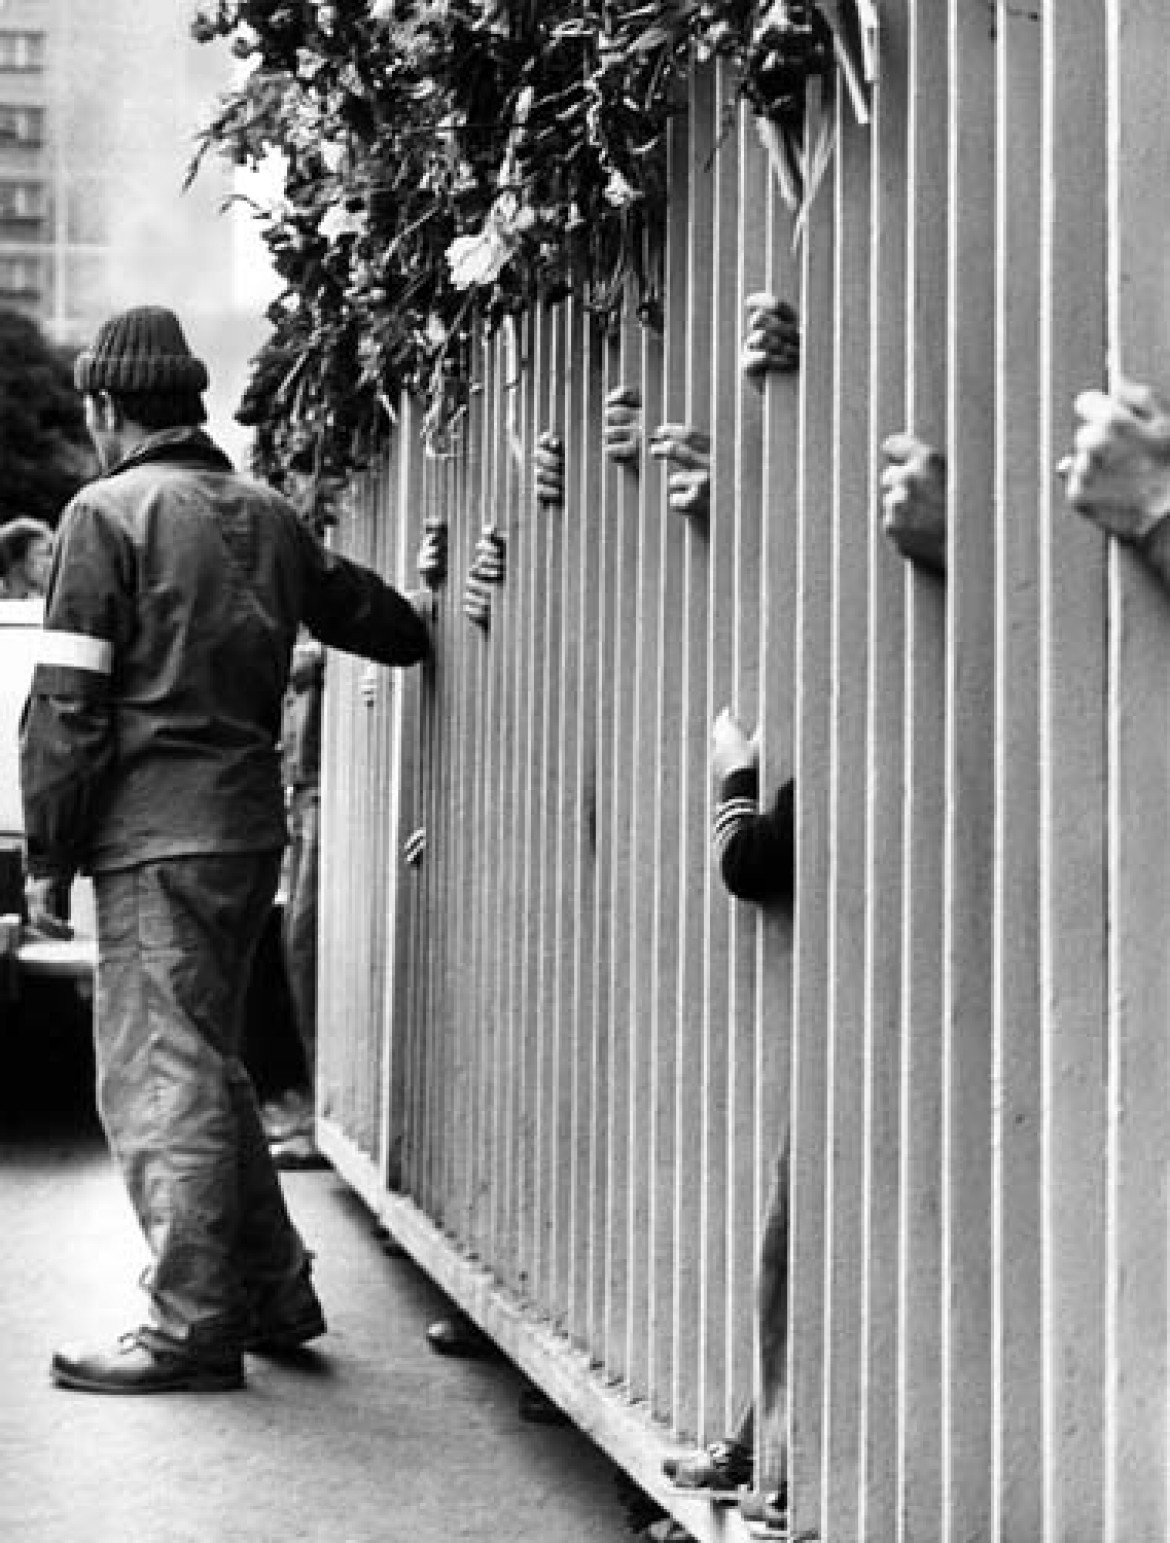 "Żelazna granica", Brama nr 2 Stoczni Gdańskiej dzieli strajkujących od bliskich.Sierpień 1980 r. Fot. Erazm Ciołek